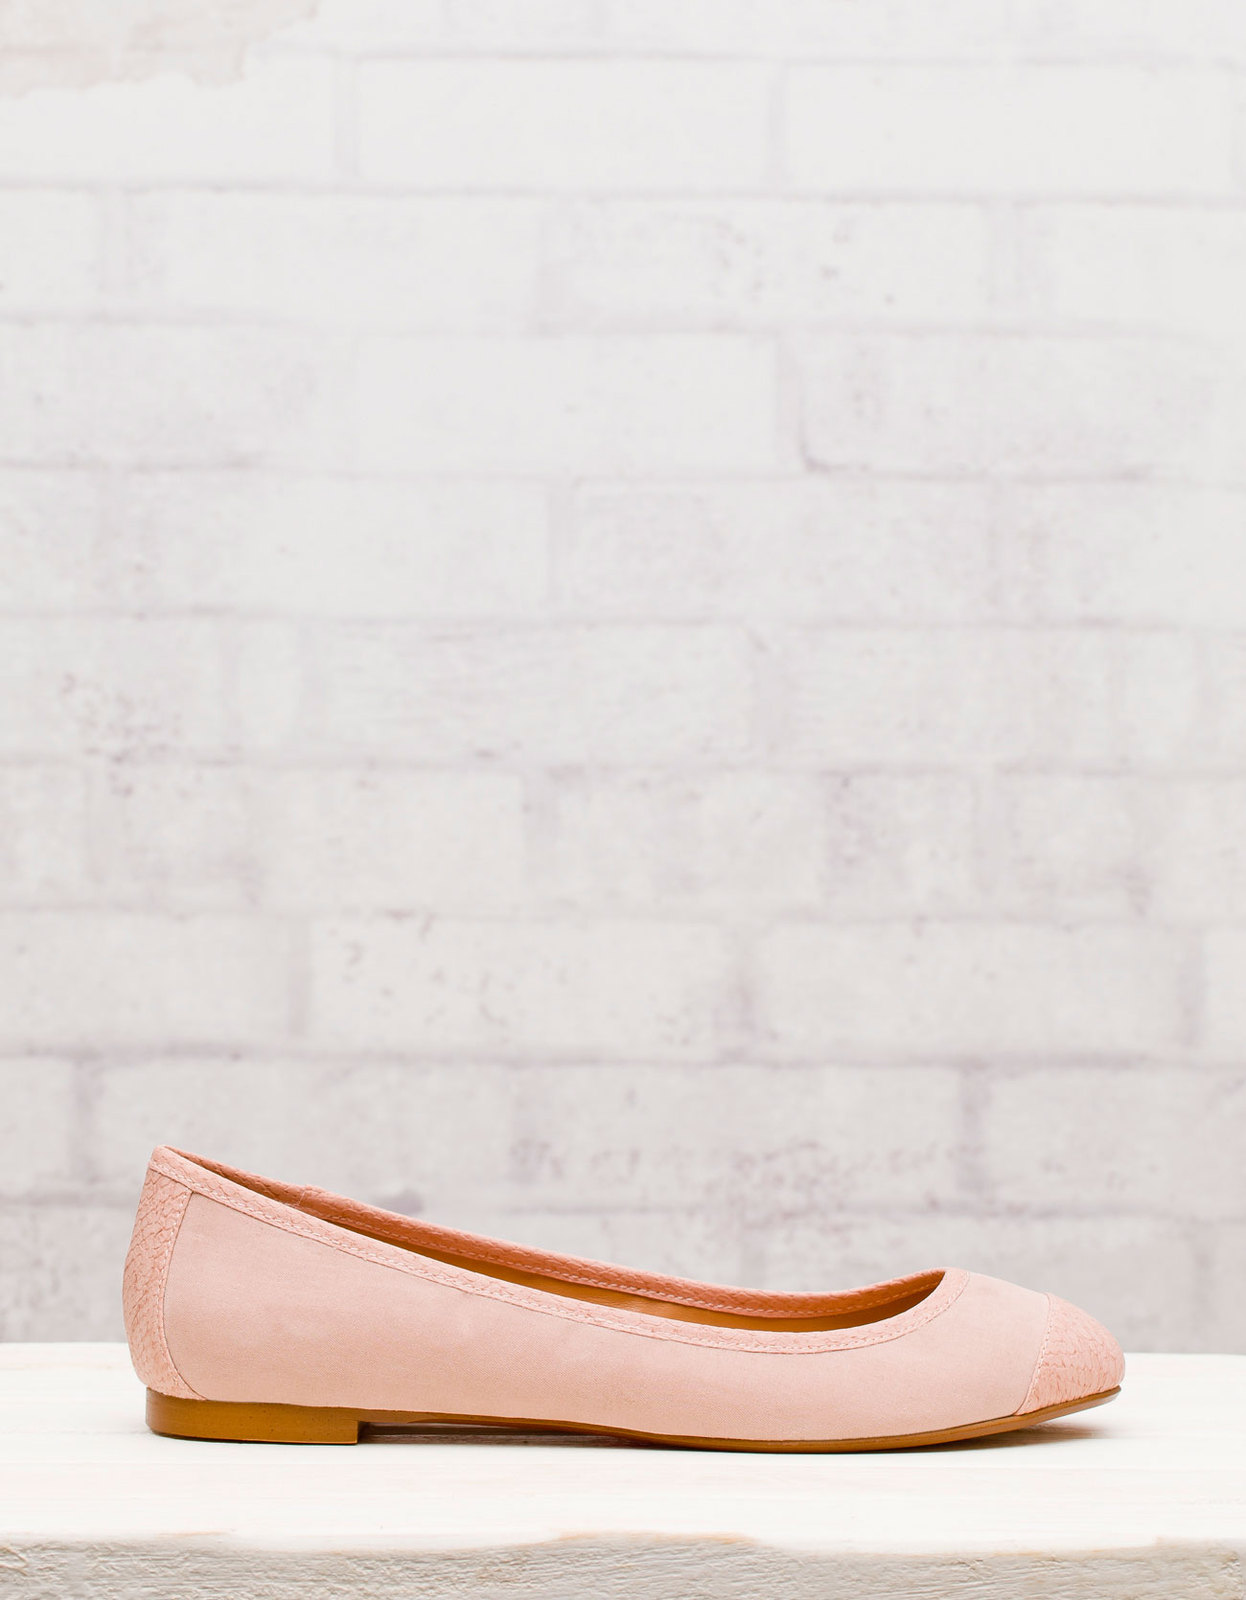 Stradivarius halvány rózsaszín balerina cipő fotója